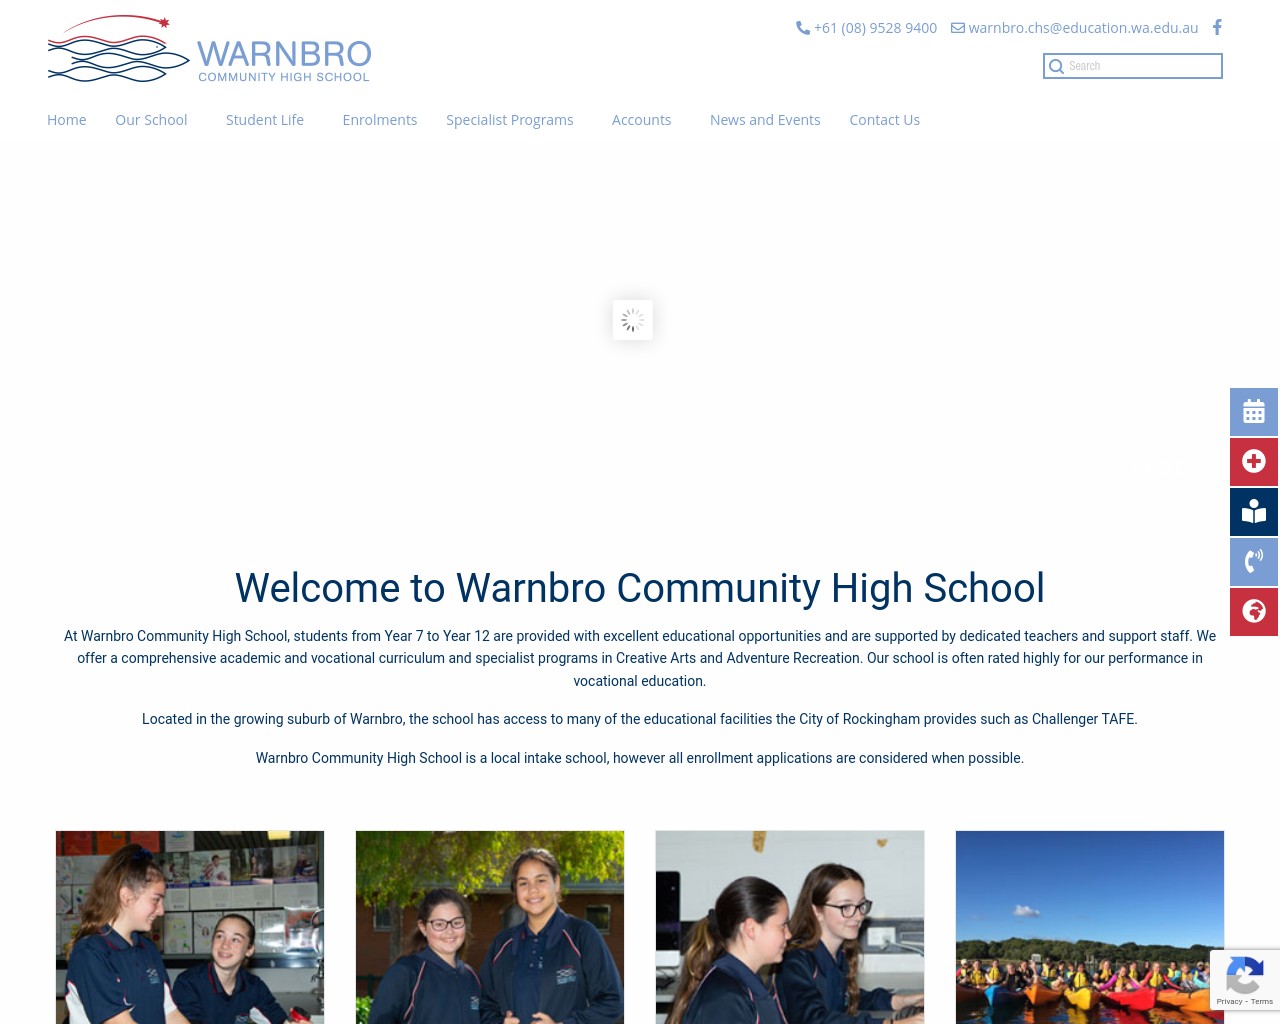 Warnbro Community High School